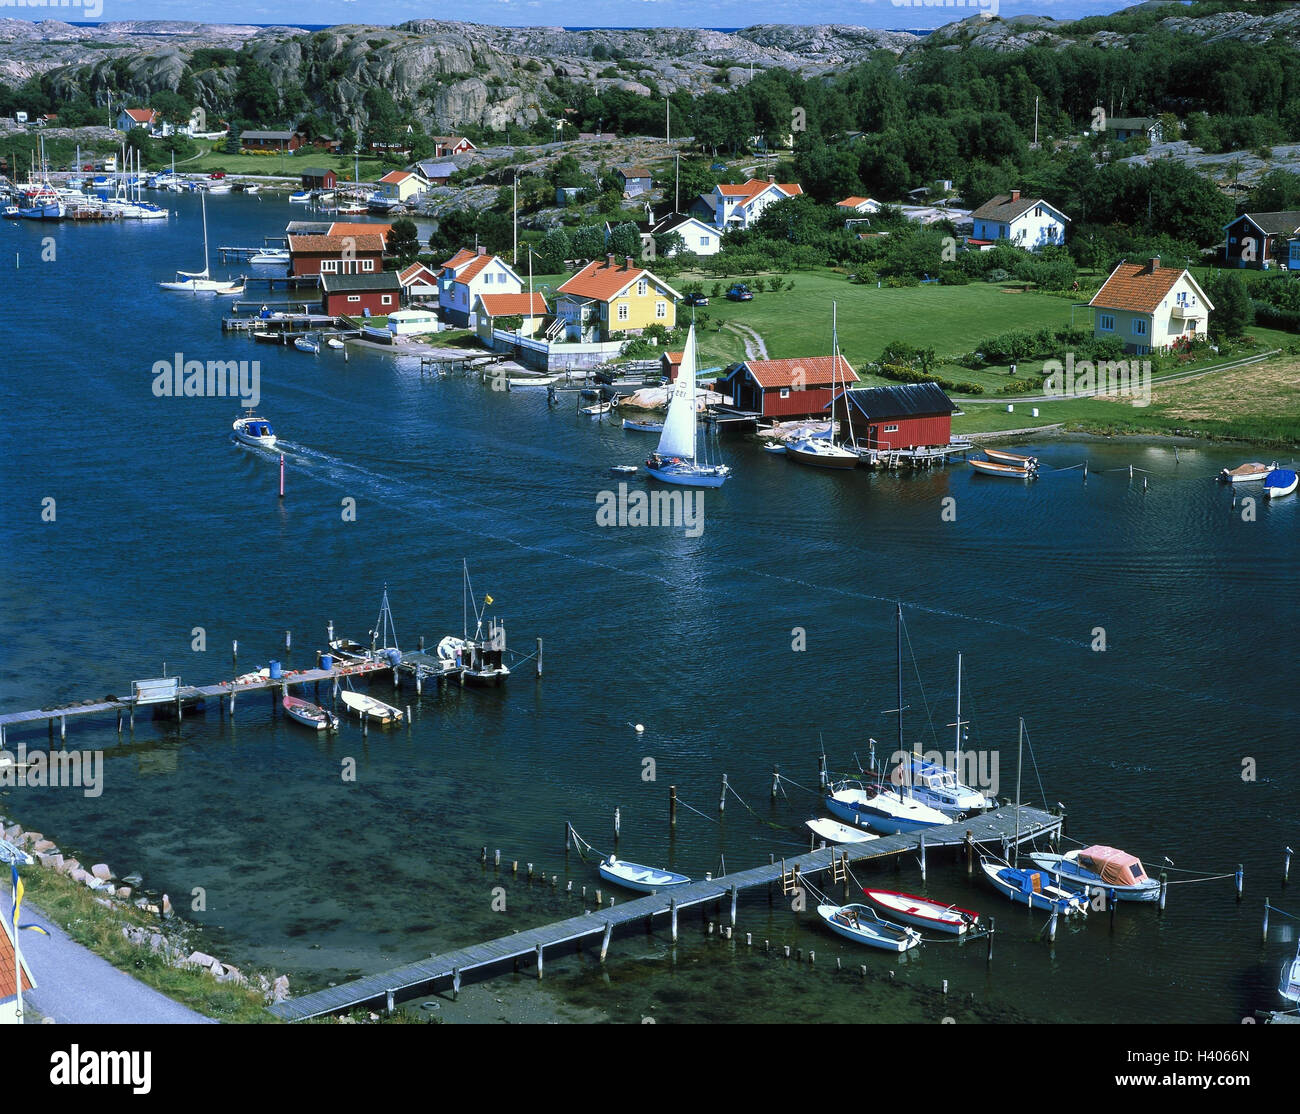 La Svezia, Bohuslän, costa, vicino il suono di Amburgo, il porto, il luogo, la costruzione di case, case residenziali, bile costa, fiordo, pontile, stivali, barche a vela, holiday resort, destinazione Foto Stock